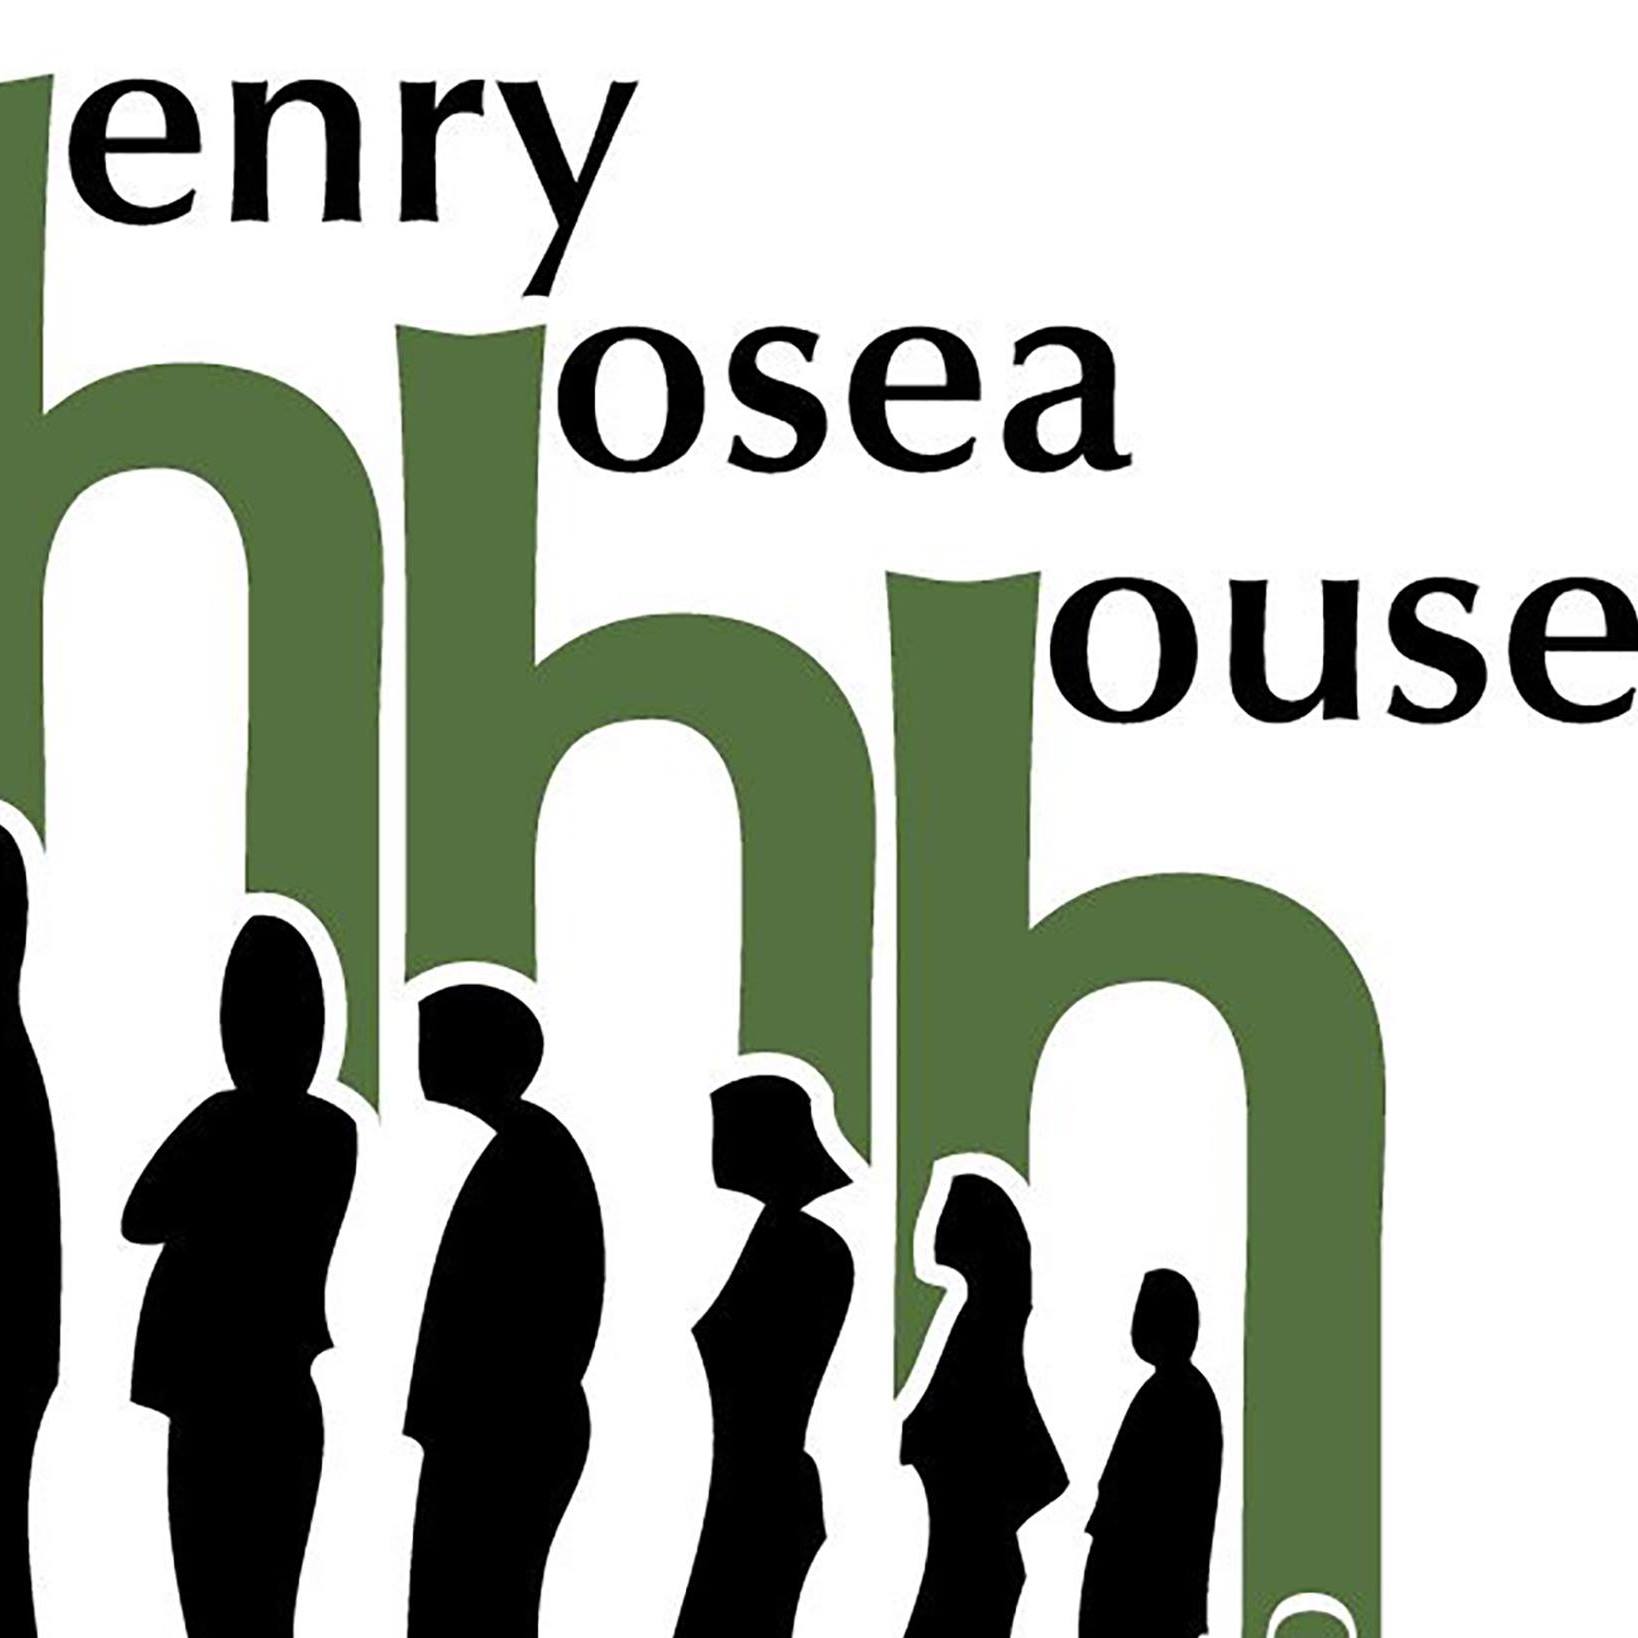 Henry Hosea House